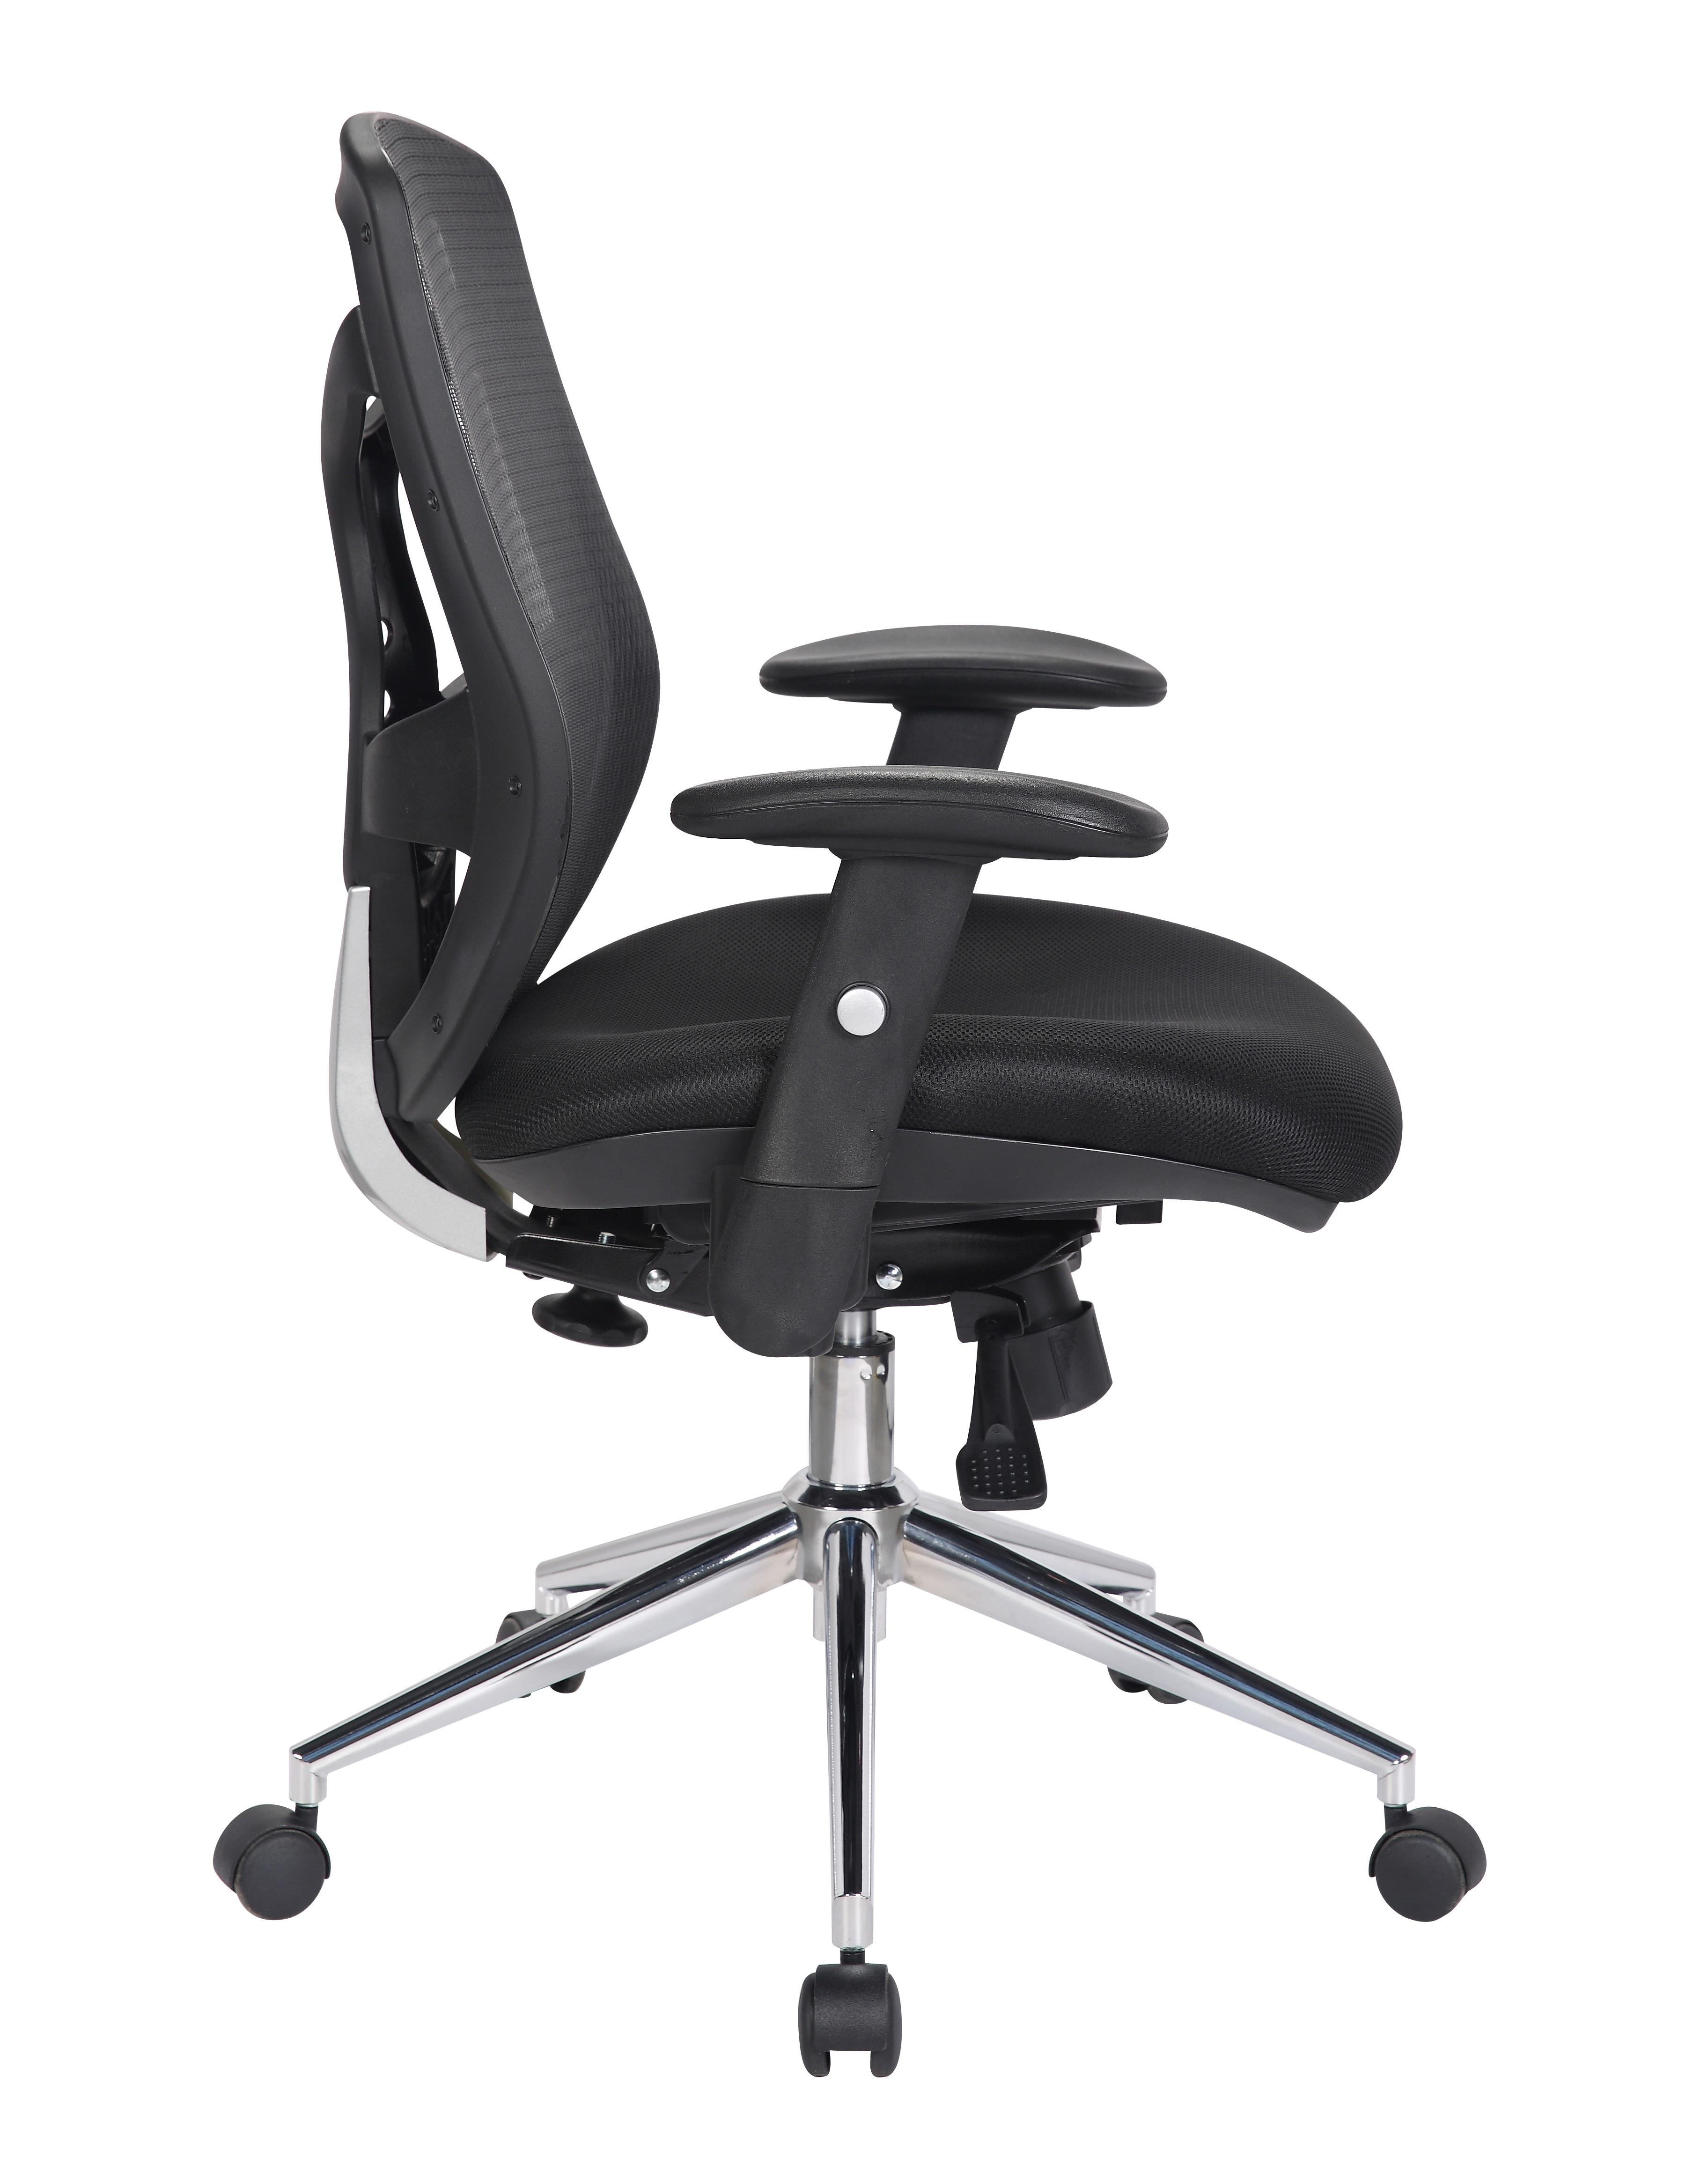 Sedia ergonomica da ufficio: certificata e garantita - Studio T